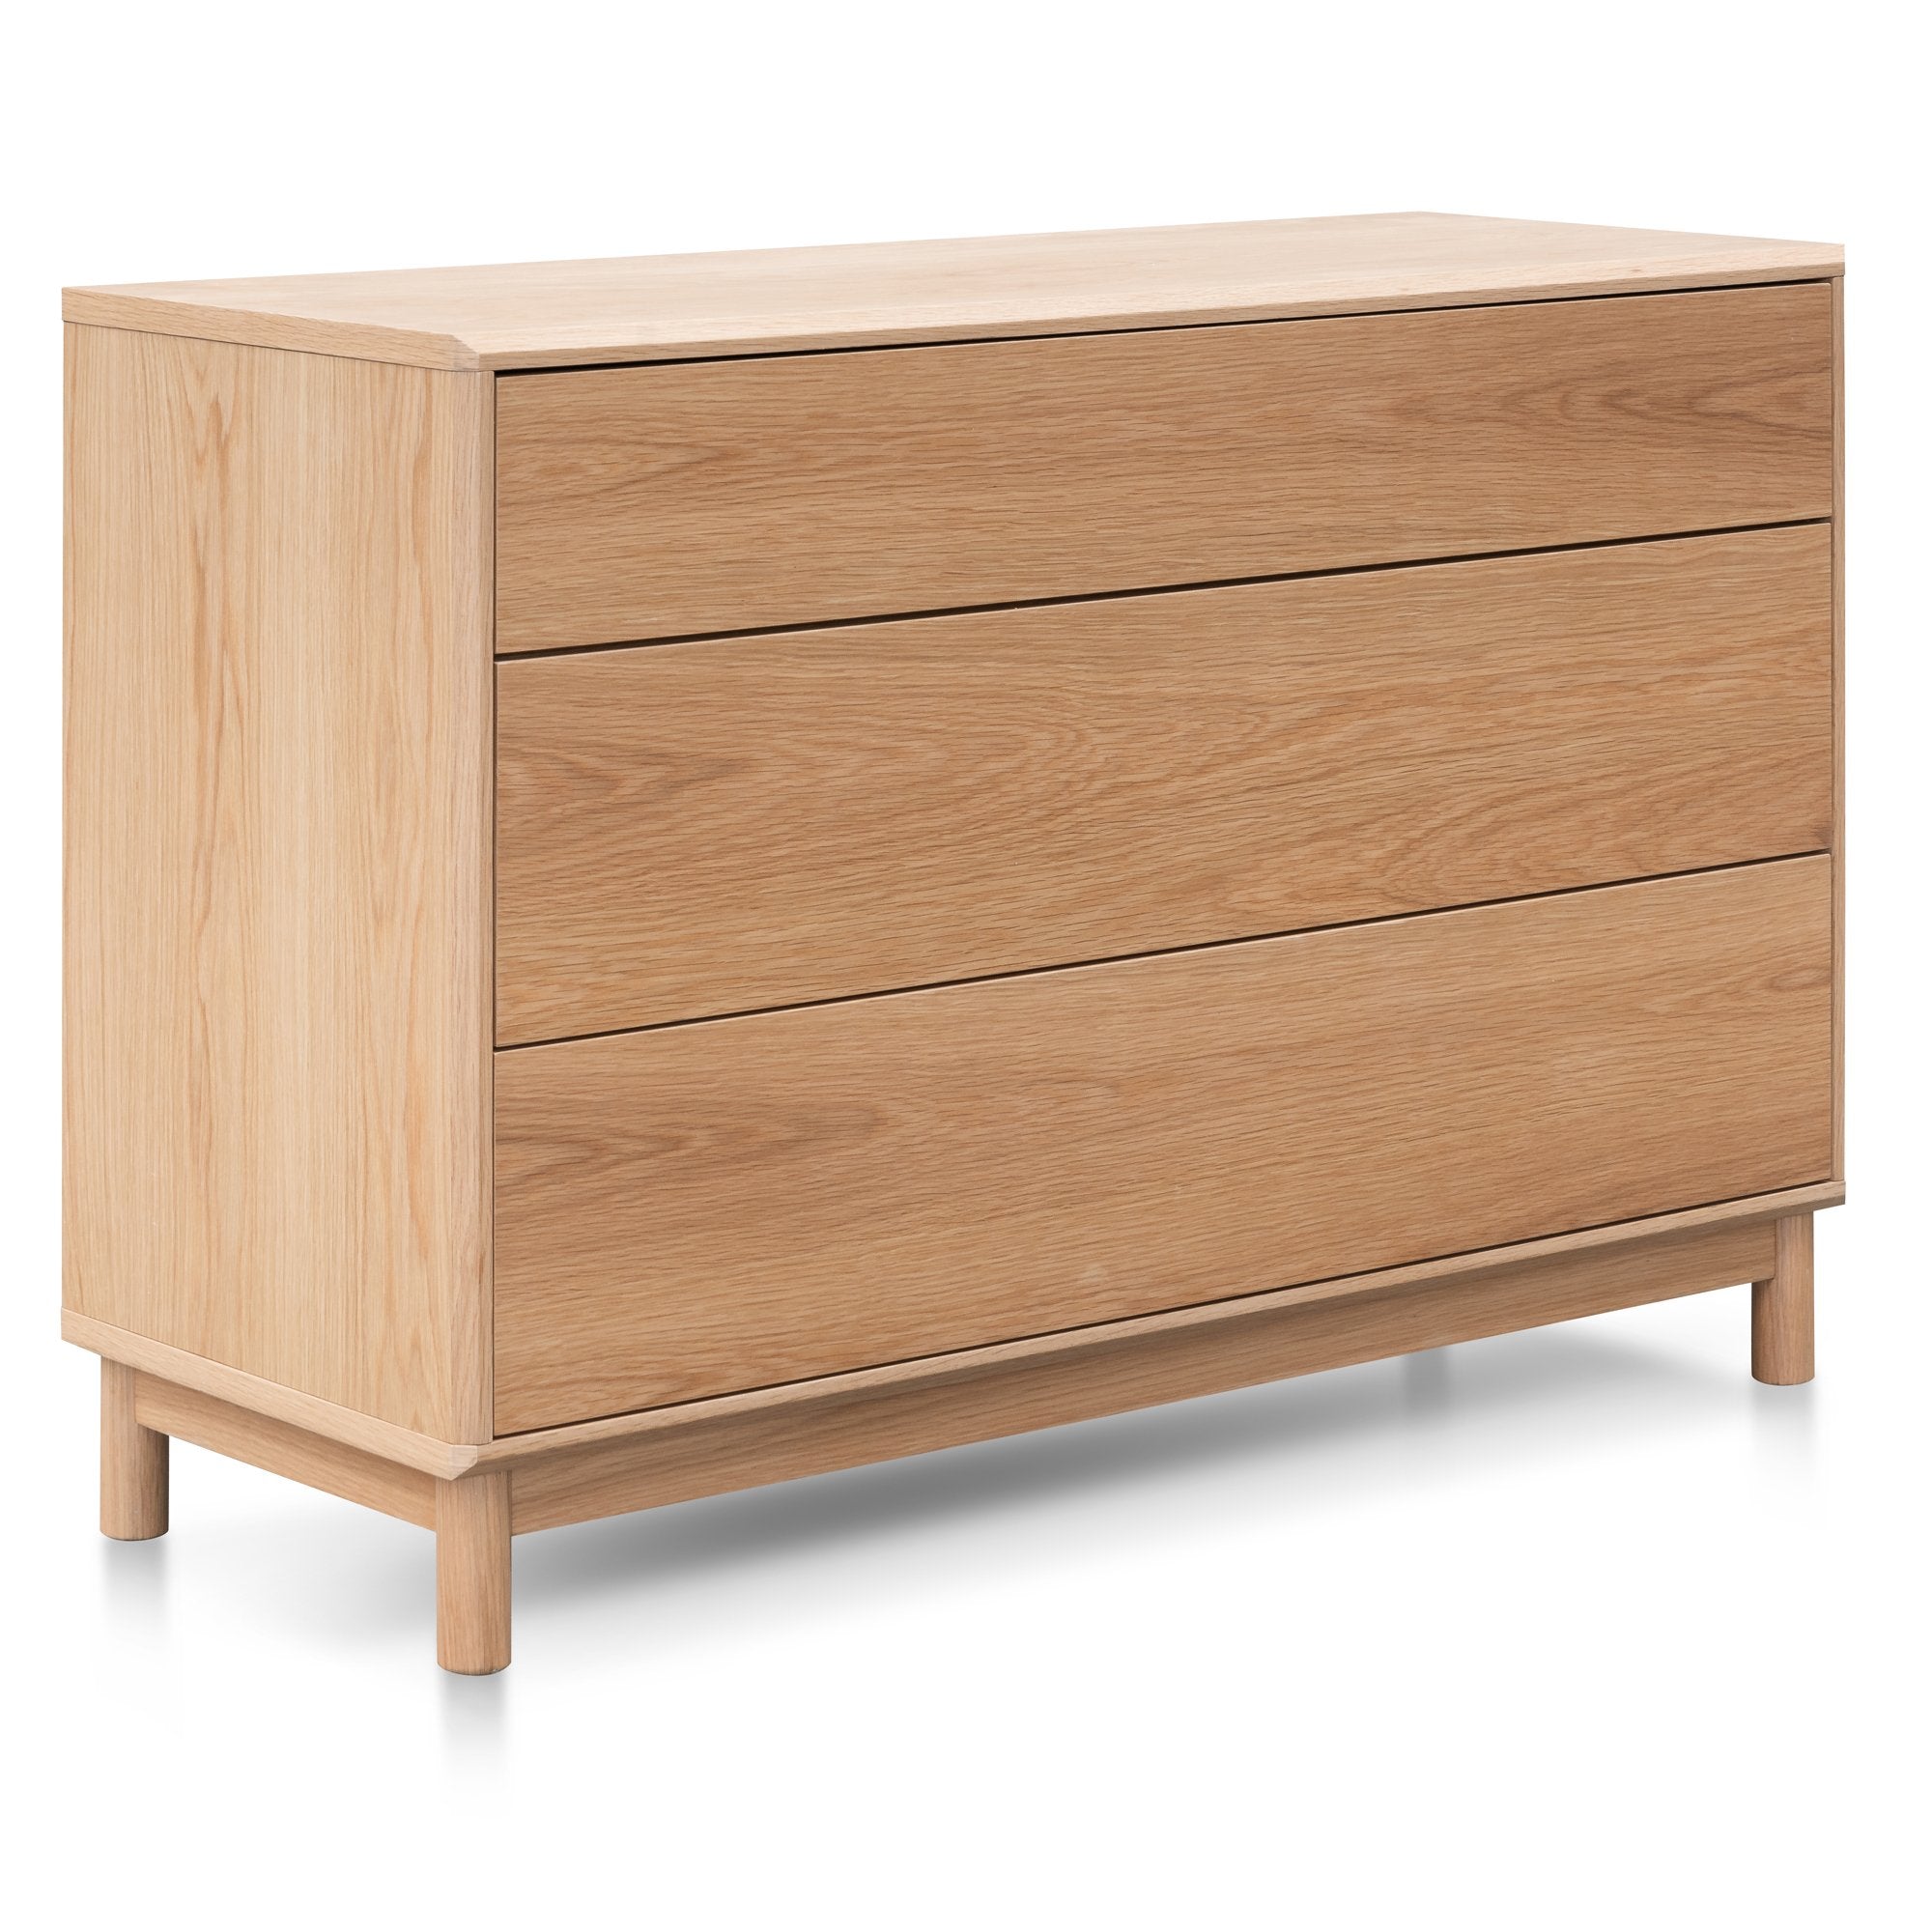 Evelyn 3 Drawers Dresser Unit - Natural Oak - Dressers